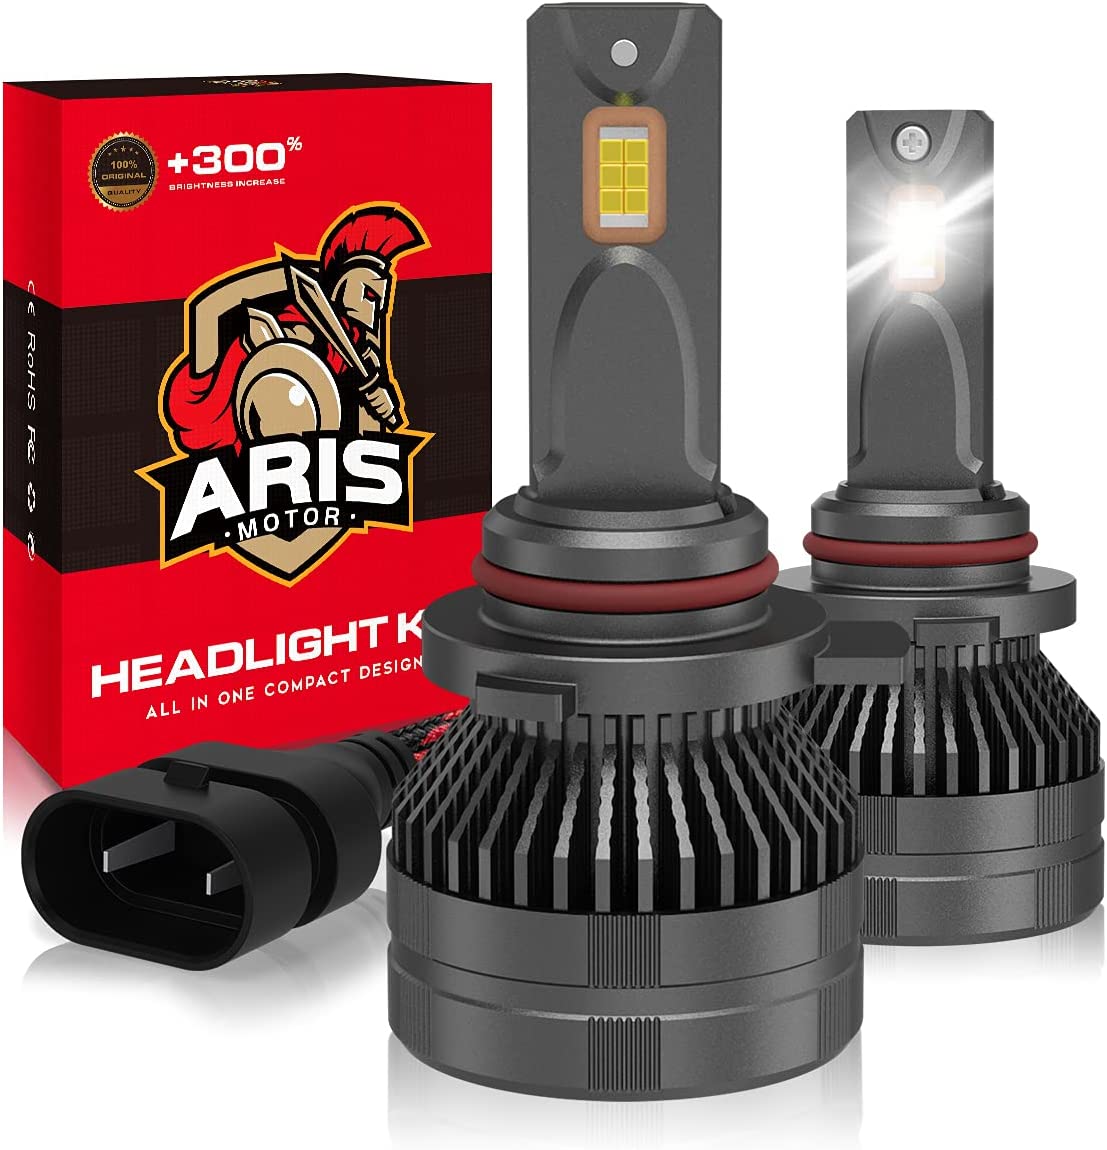 The Best LED Headlight Bulbs for the Ram 1500